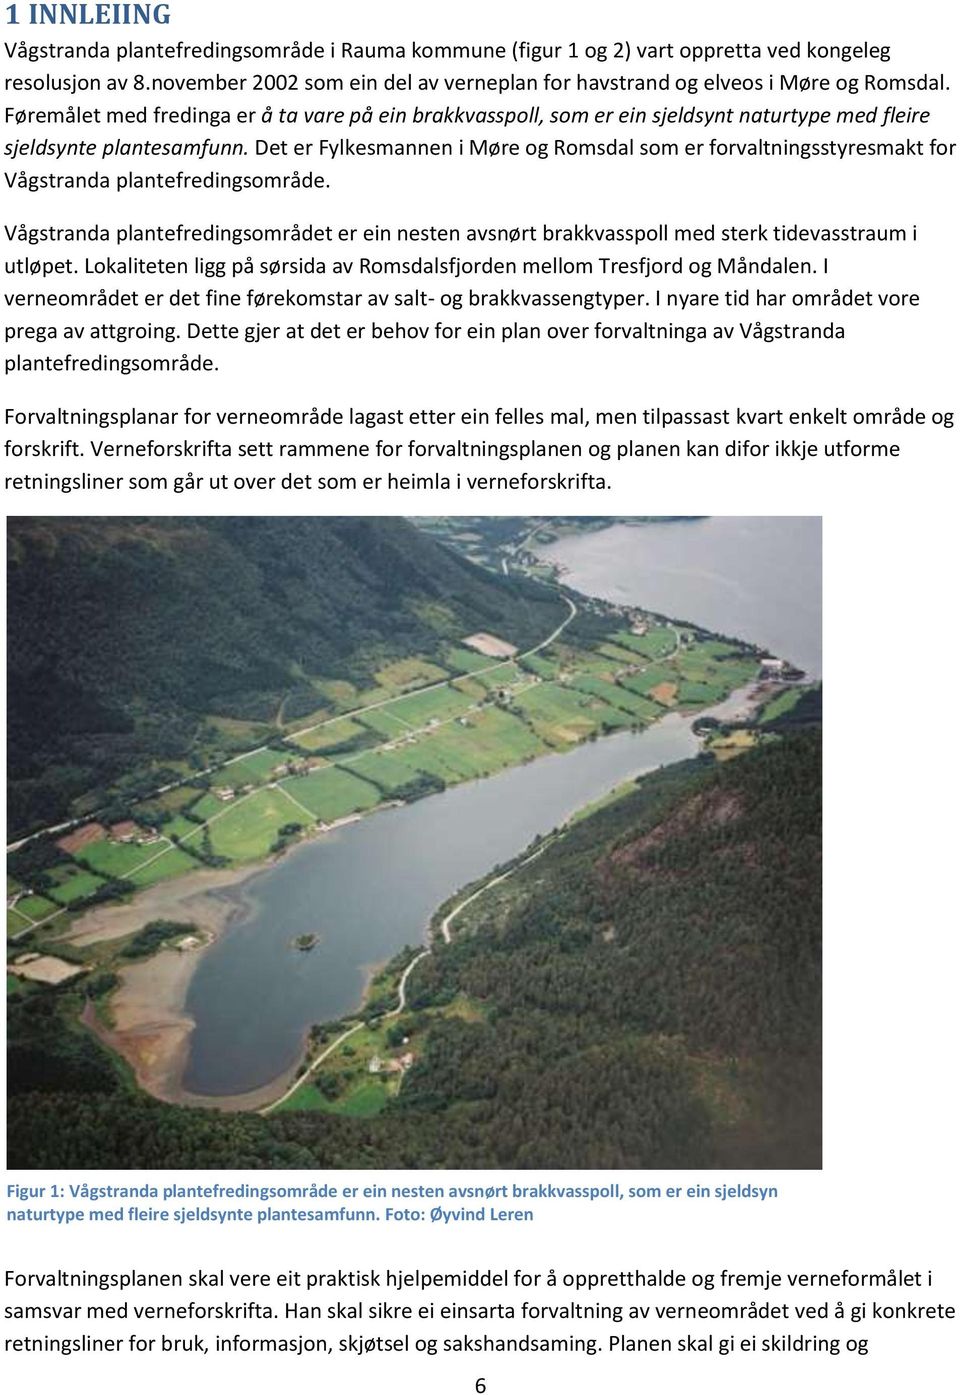 Det er Fylkesmannen i Møre og Romsdal som er forvaltningsstyresmakt for Vågstranda plantefredingsområde.